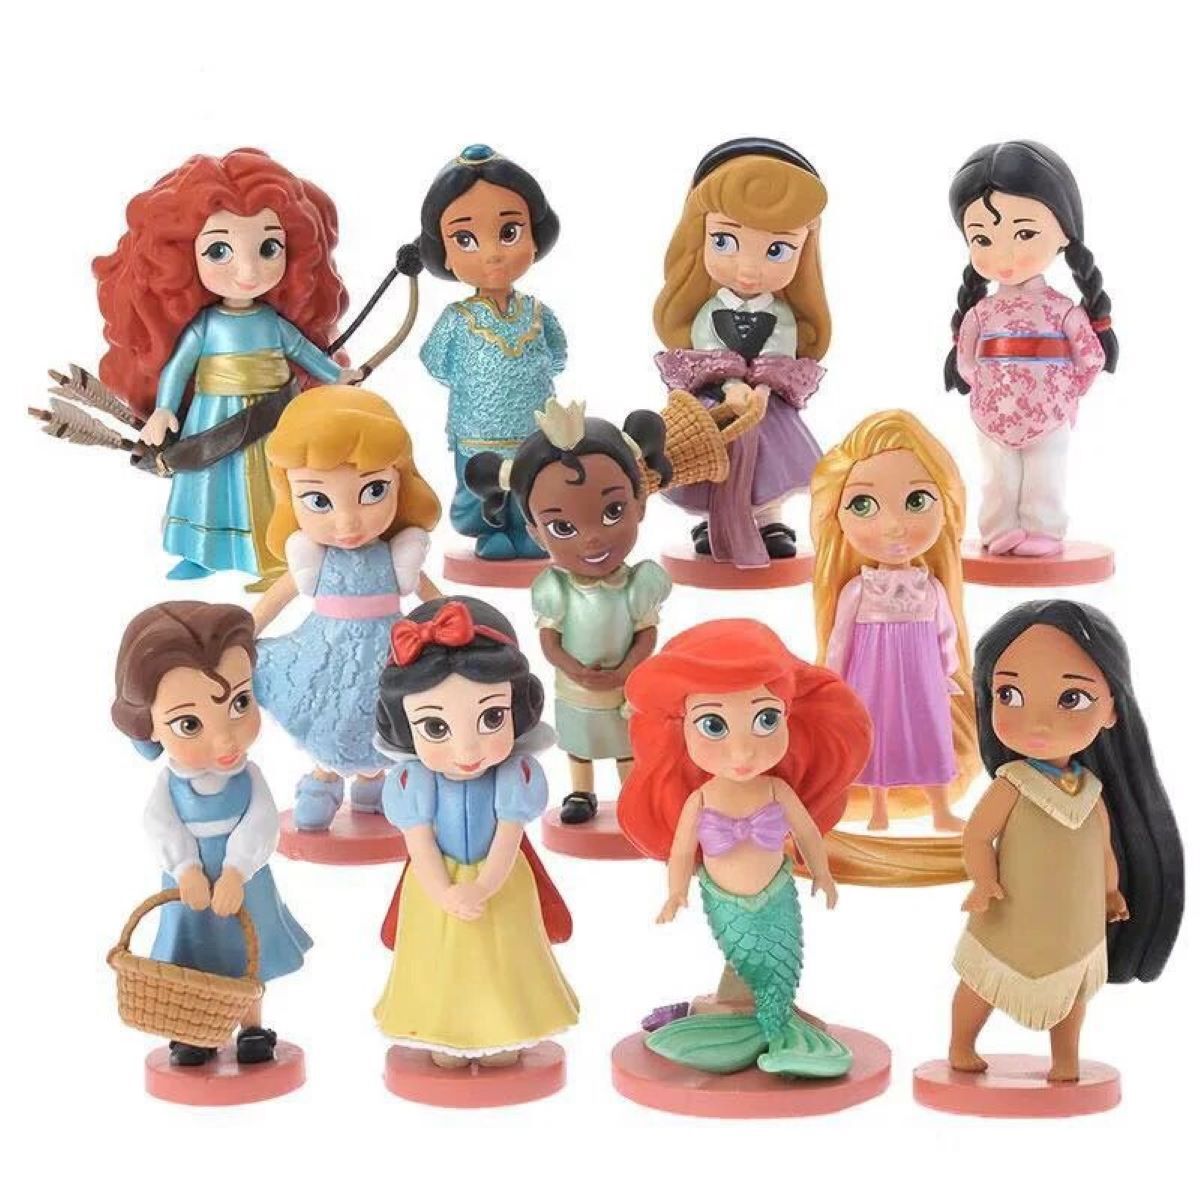 Куклы принцессы Дисней Моана мини. Фигурки Disney Animators collection. Набор фигурок Рапунцель Disney. Куклы Disney Моана и Белоснежка.